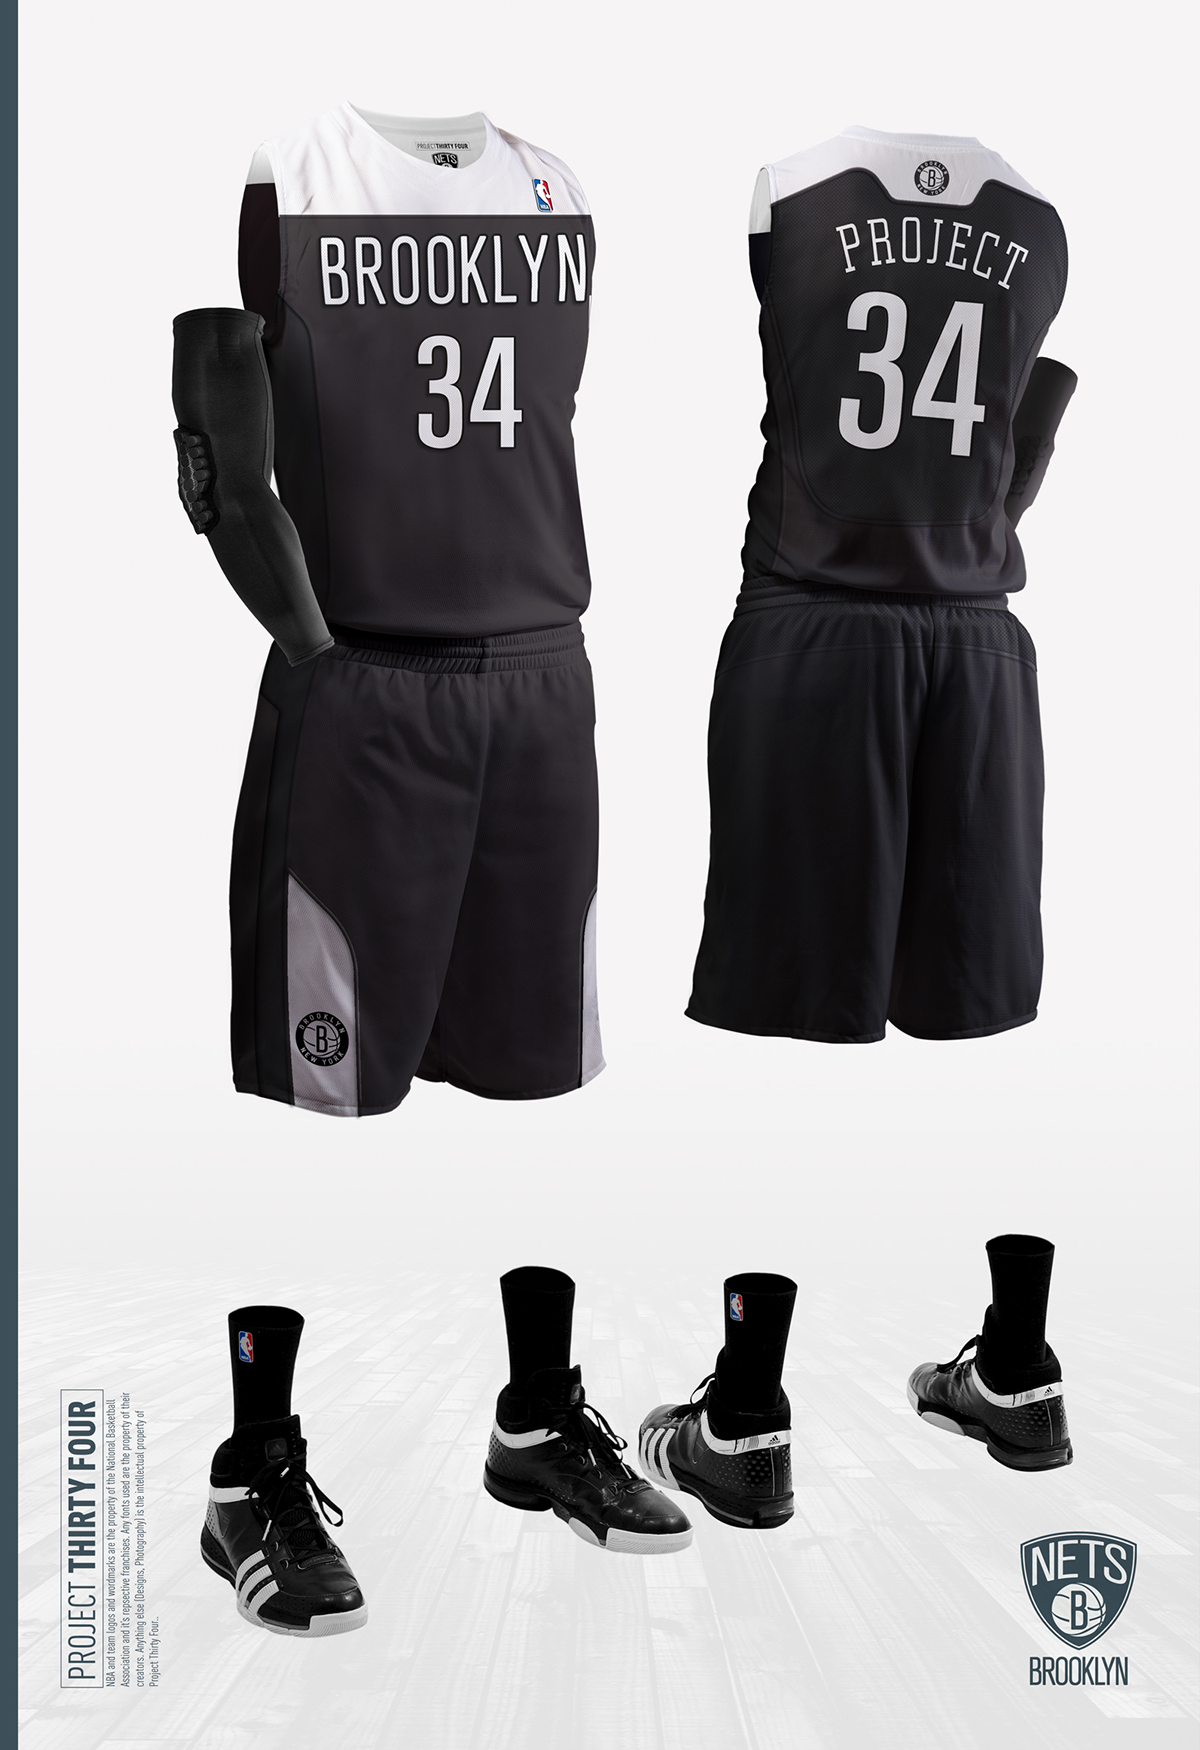 NBA Brooklyn Nets Sports apparel jersey